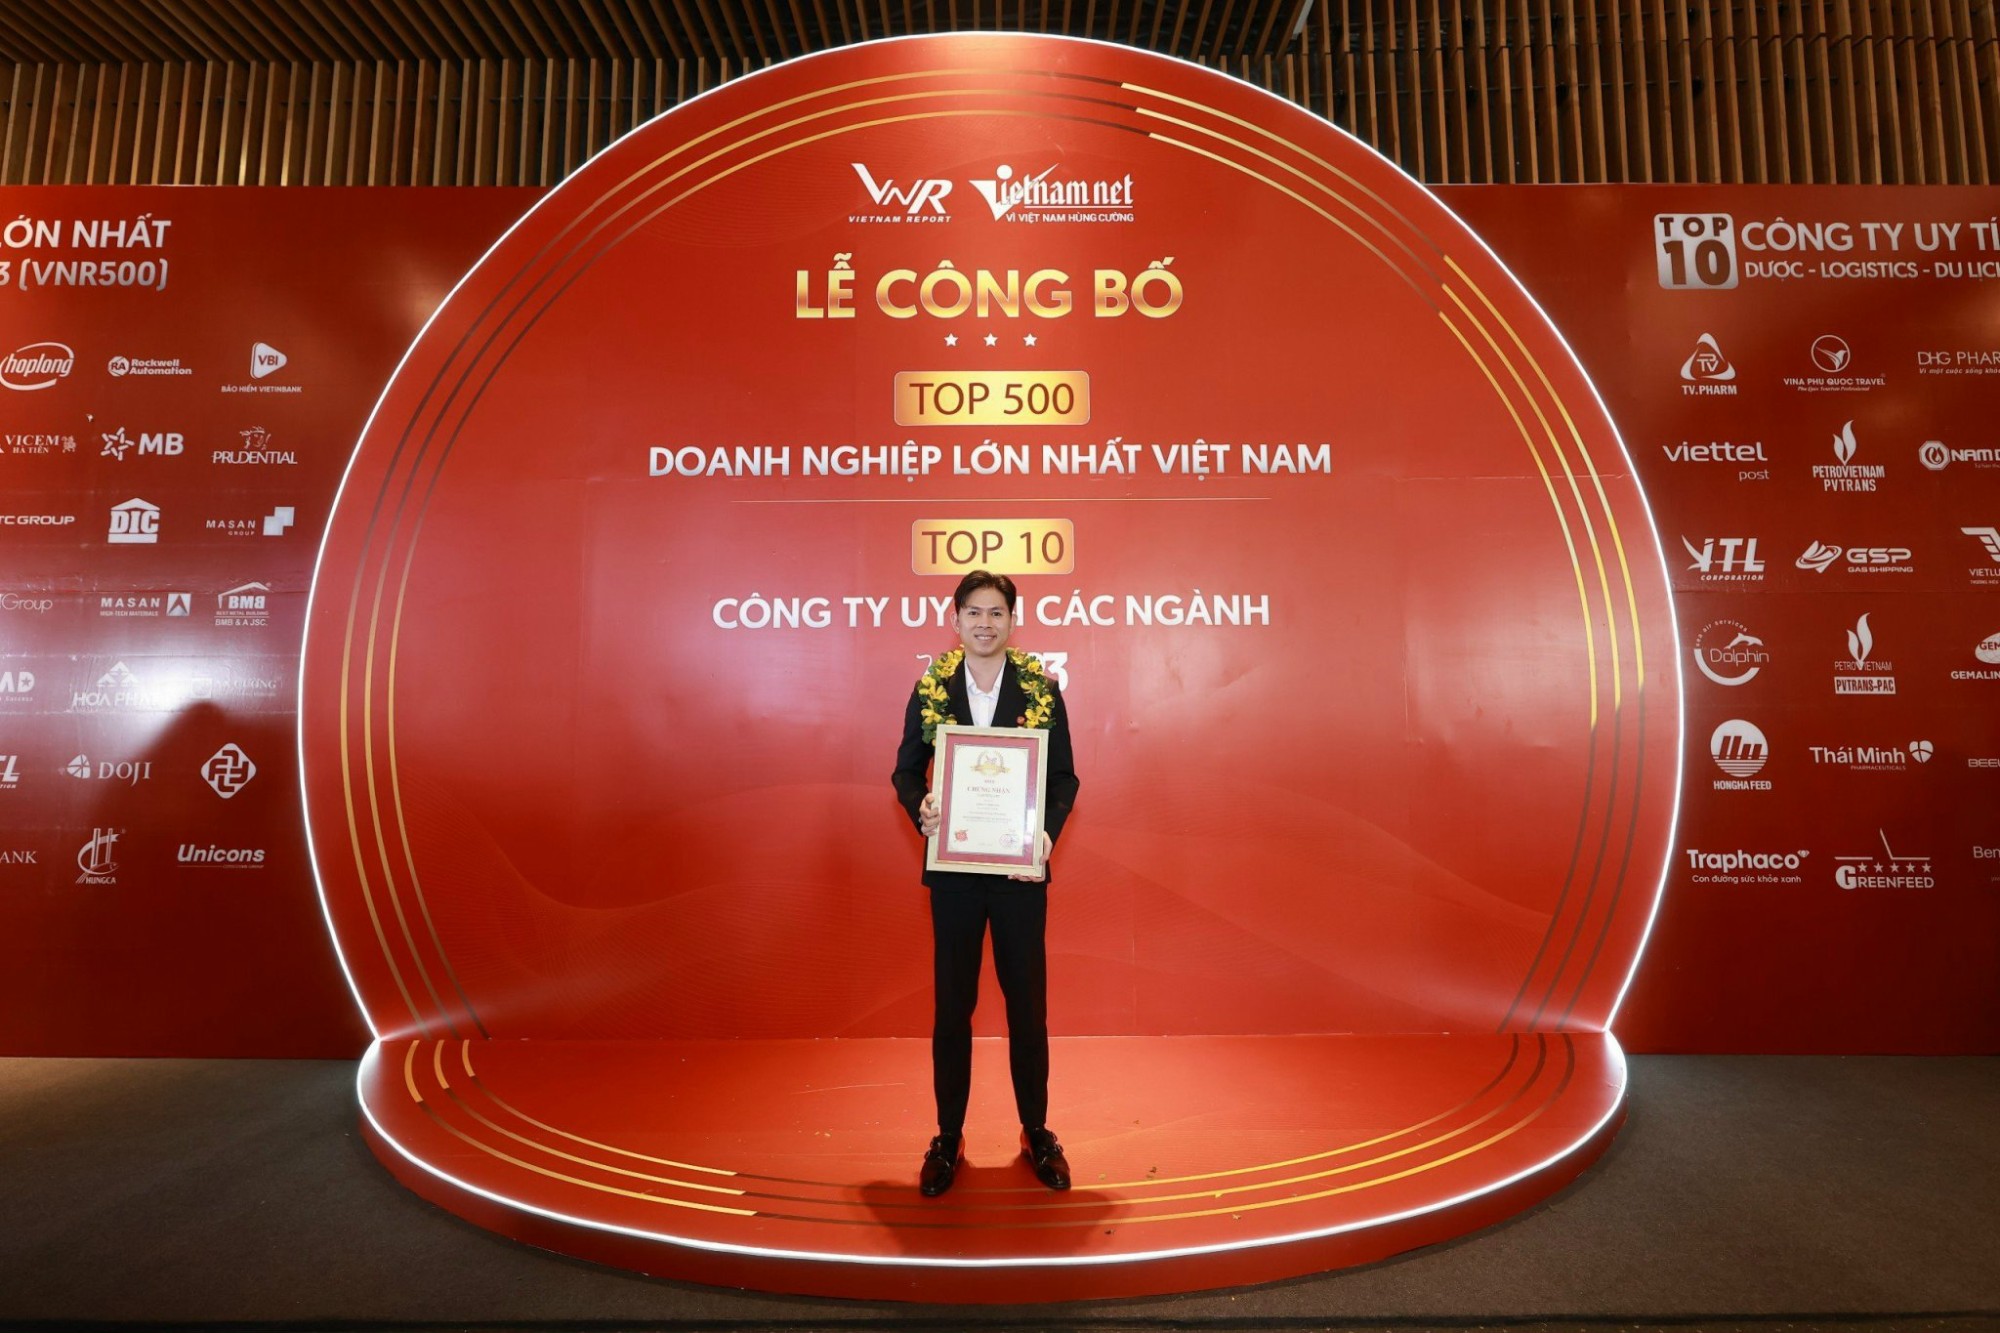 Ông Phạm Đức Ý - Phó Tổng Giám Đốc Vinafeed Group đại diện Ban Lãnh đạo nhận giải Top 500 doanh nghiệp lớn nhất Việt Nam